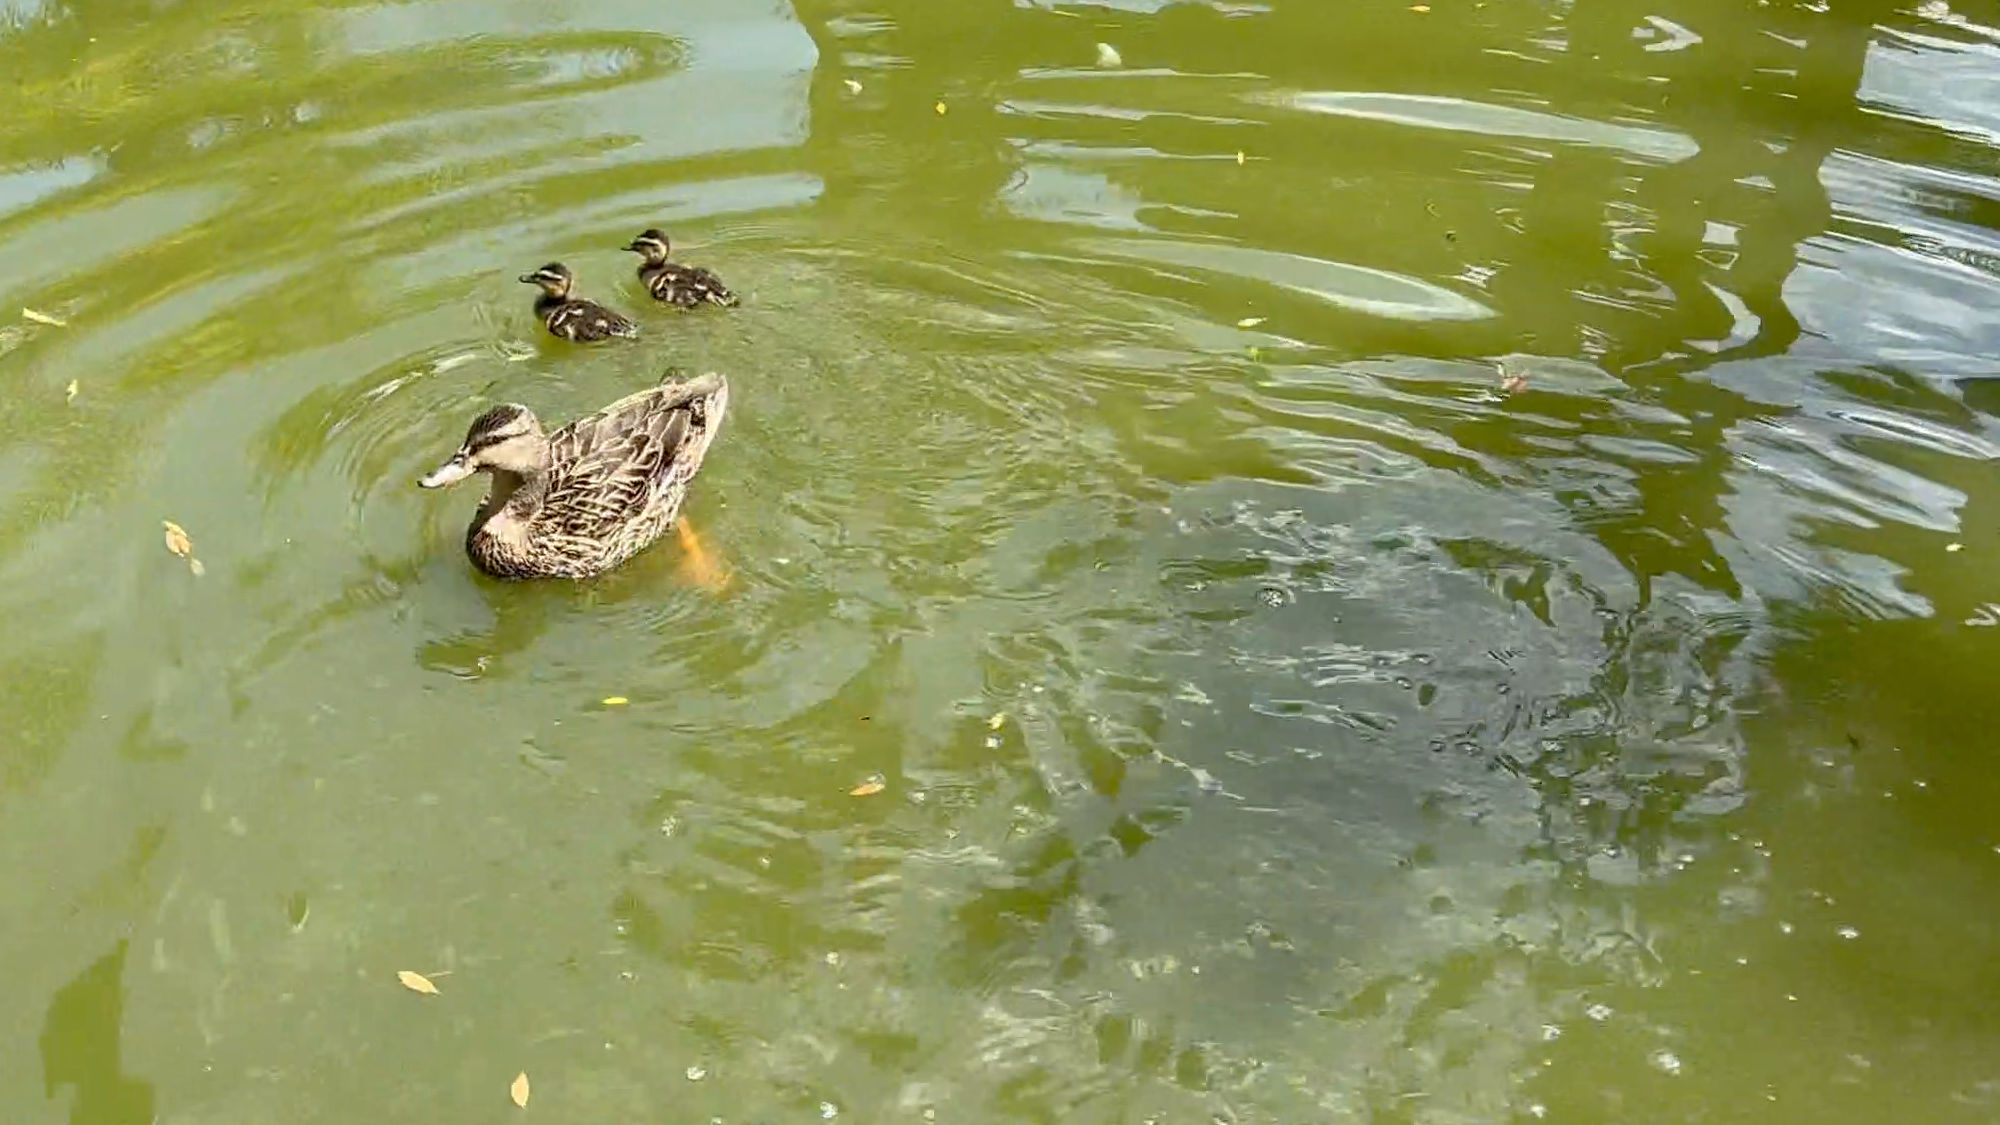 Knott's Berry Farm Jungle Island Lagoon Ducks